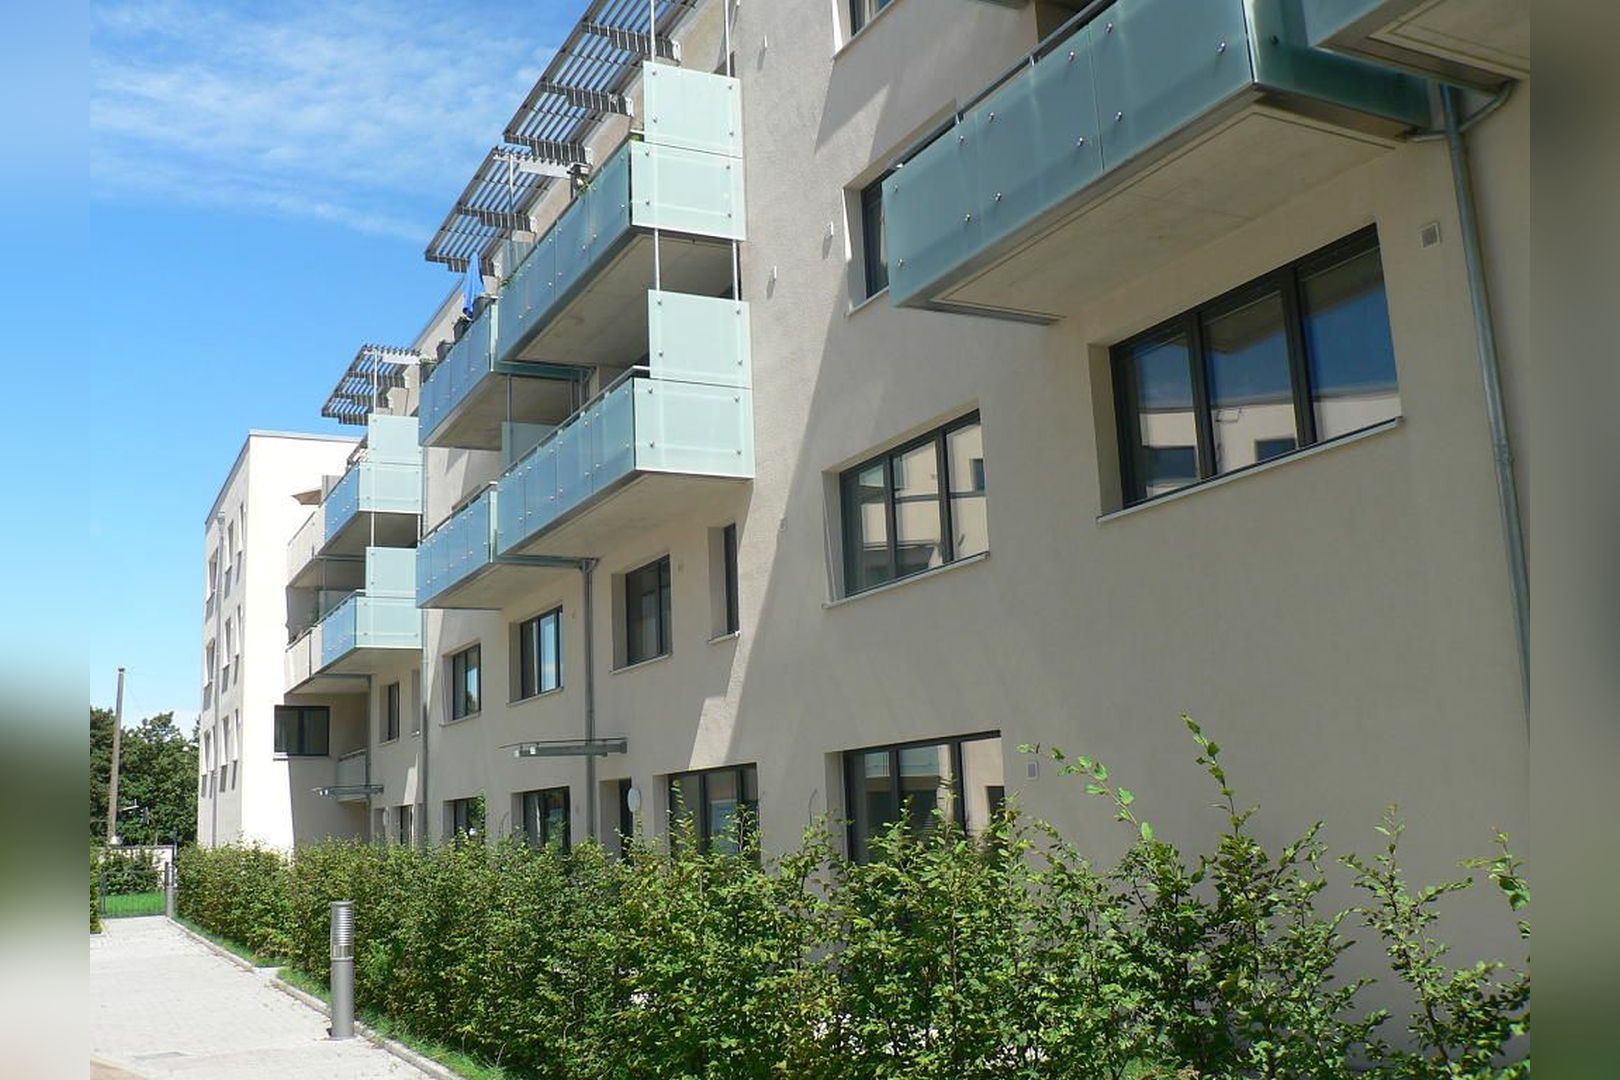 Immobilie Nr.Hilden 005 - 2-Raum-Maisonette-Wohnung mit Terrasse & Gärtchen - Bild 18.jpg